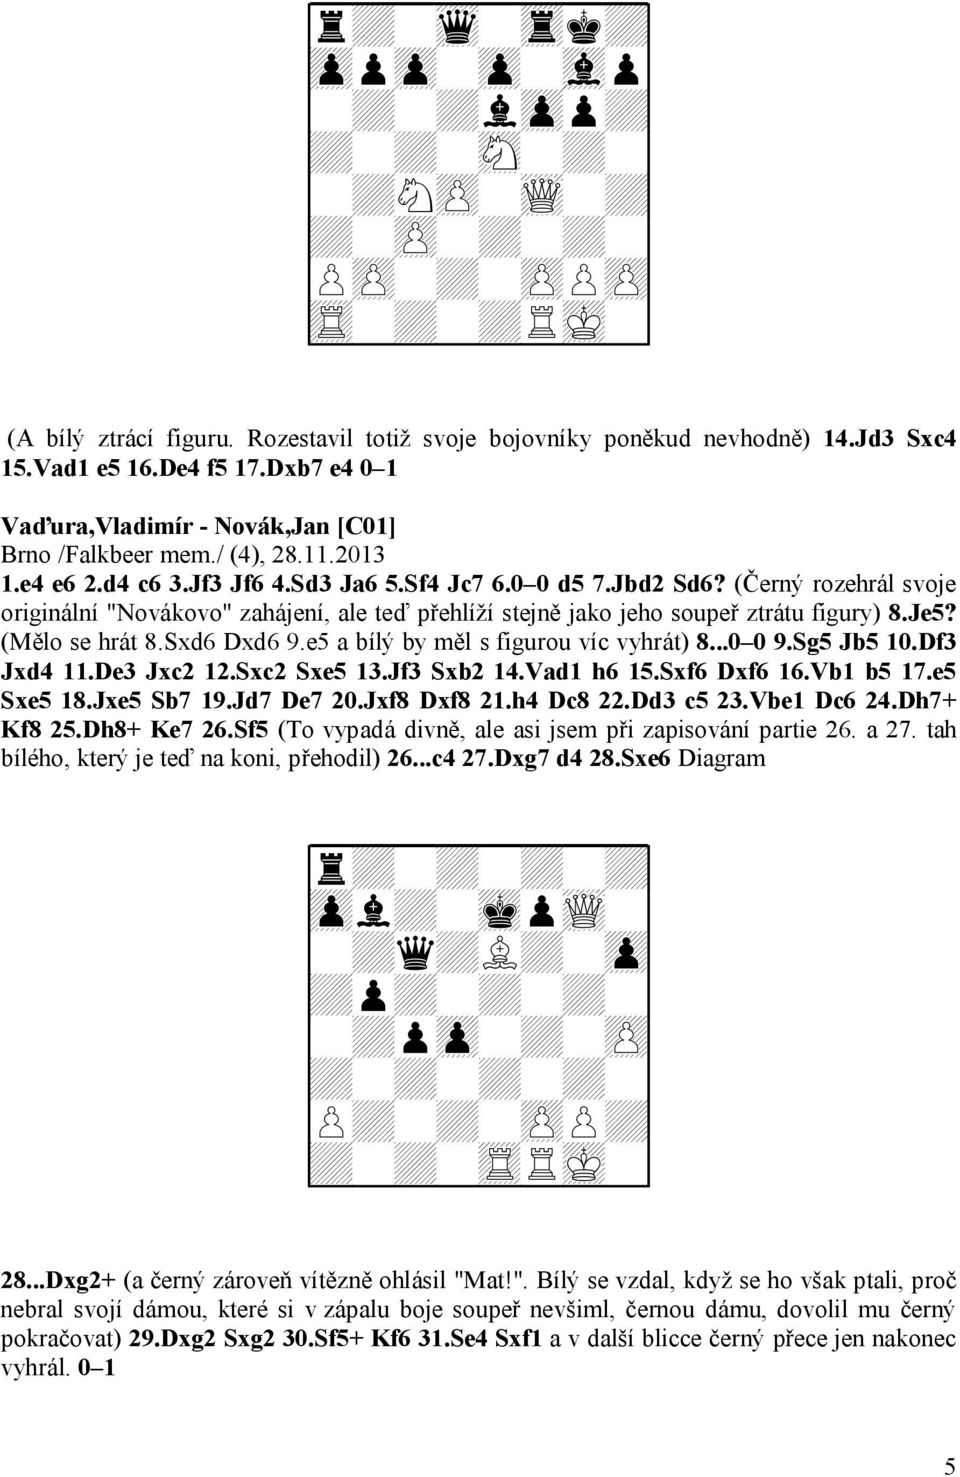 (Černý rozehrál svoje originální "Novákovo" zahájení, ale teď přehlíží stejně jako jeho soupeř ztrátu figury) 8.Je5? (Mělo se hrát 8.Sxd6 Dxd6 9.e5 a bílý by měl s figurou víc vyhrát) 8...0 0 9.